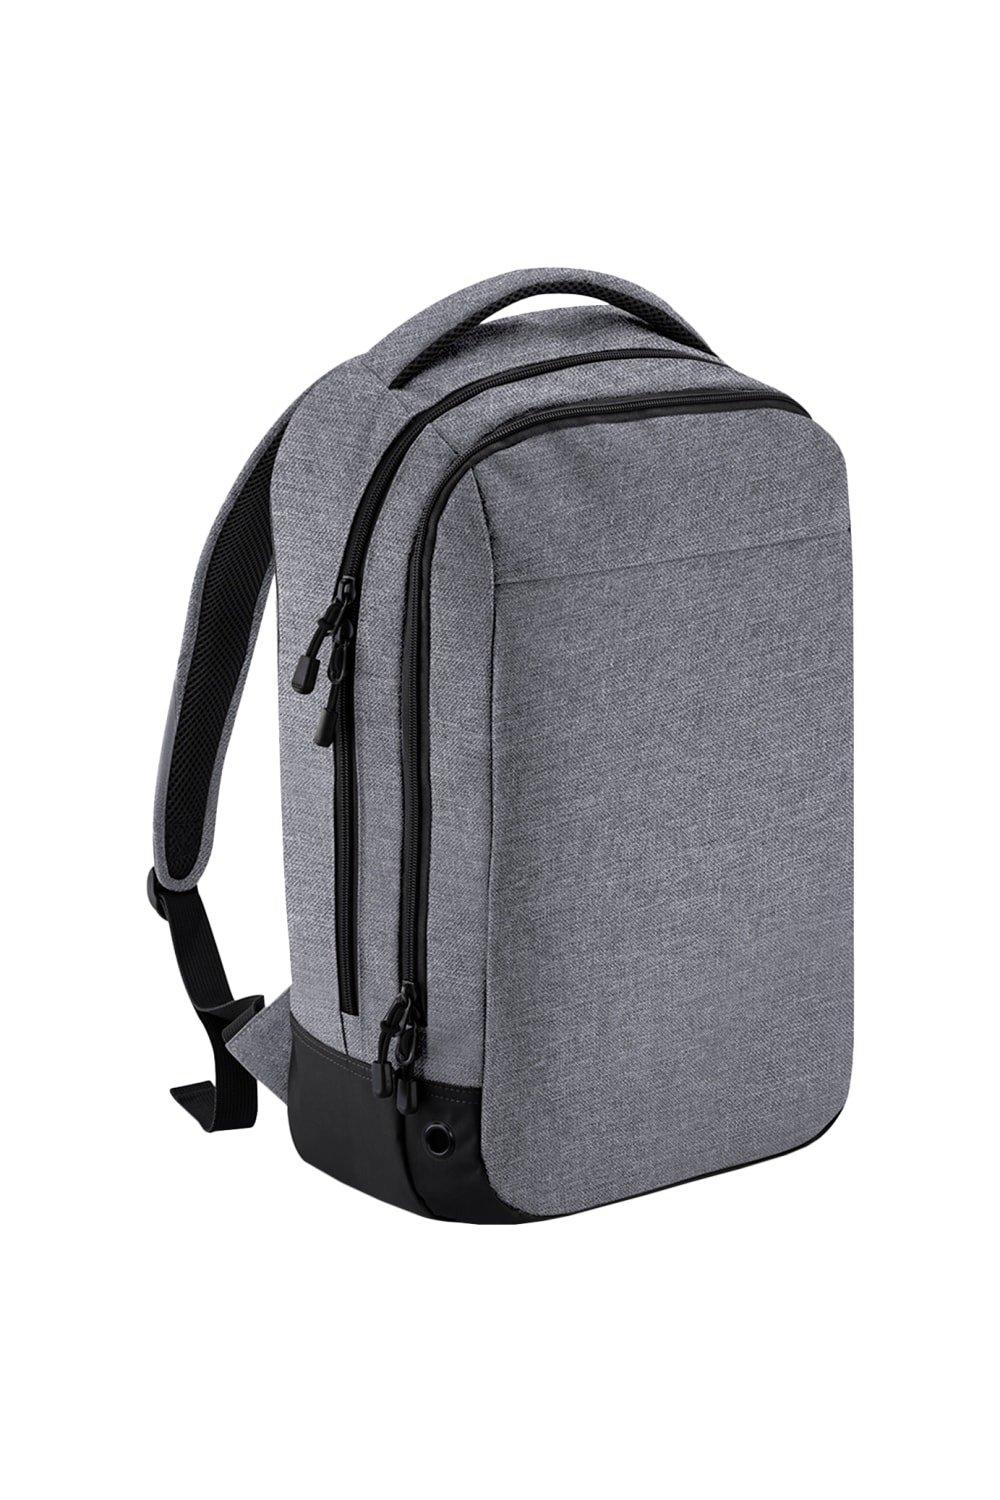 Спортивный рюкзак для отдыха Bagbase, серый